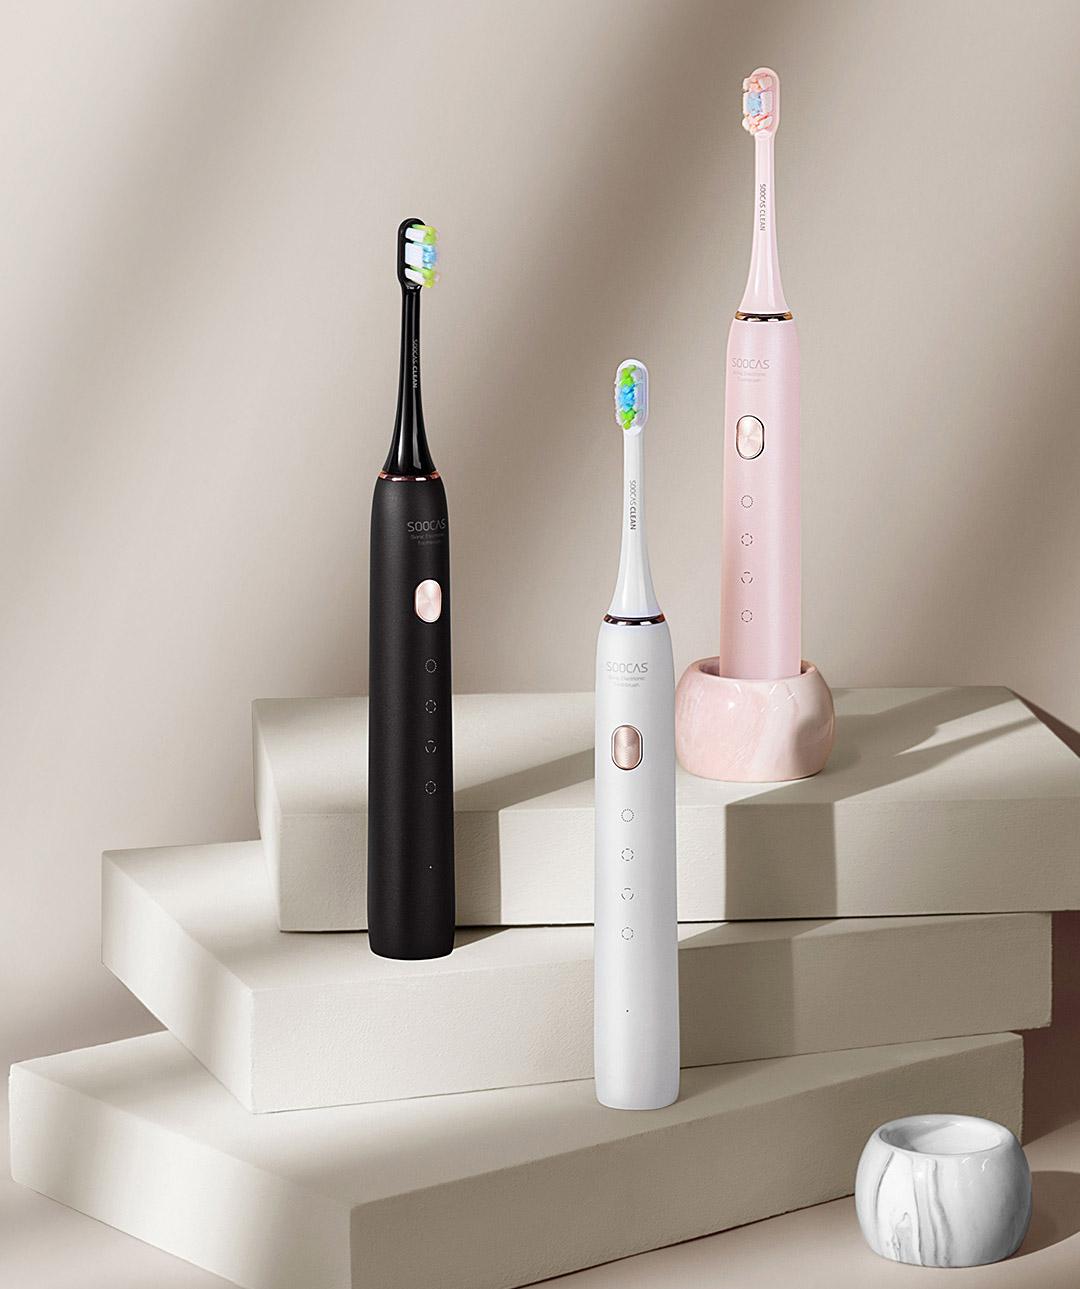 Электрическая зубная щетка Xiaomi Soocas X3U Electric Toothbrush - цена,  купить в Алматы, Казахстан в кредит или рассрочку